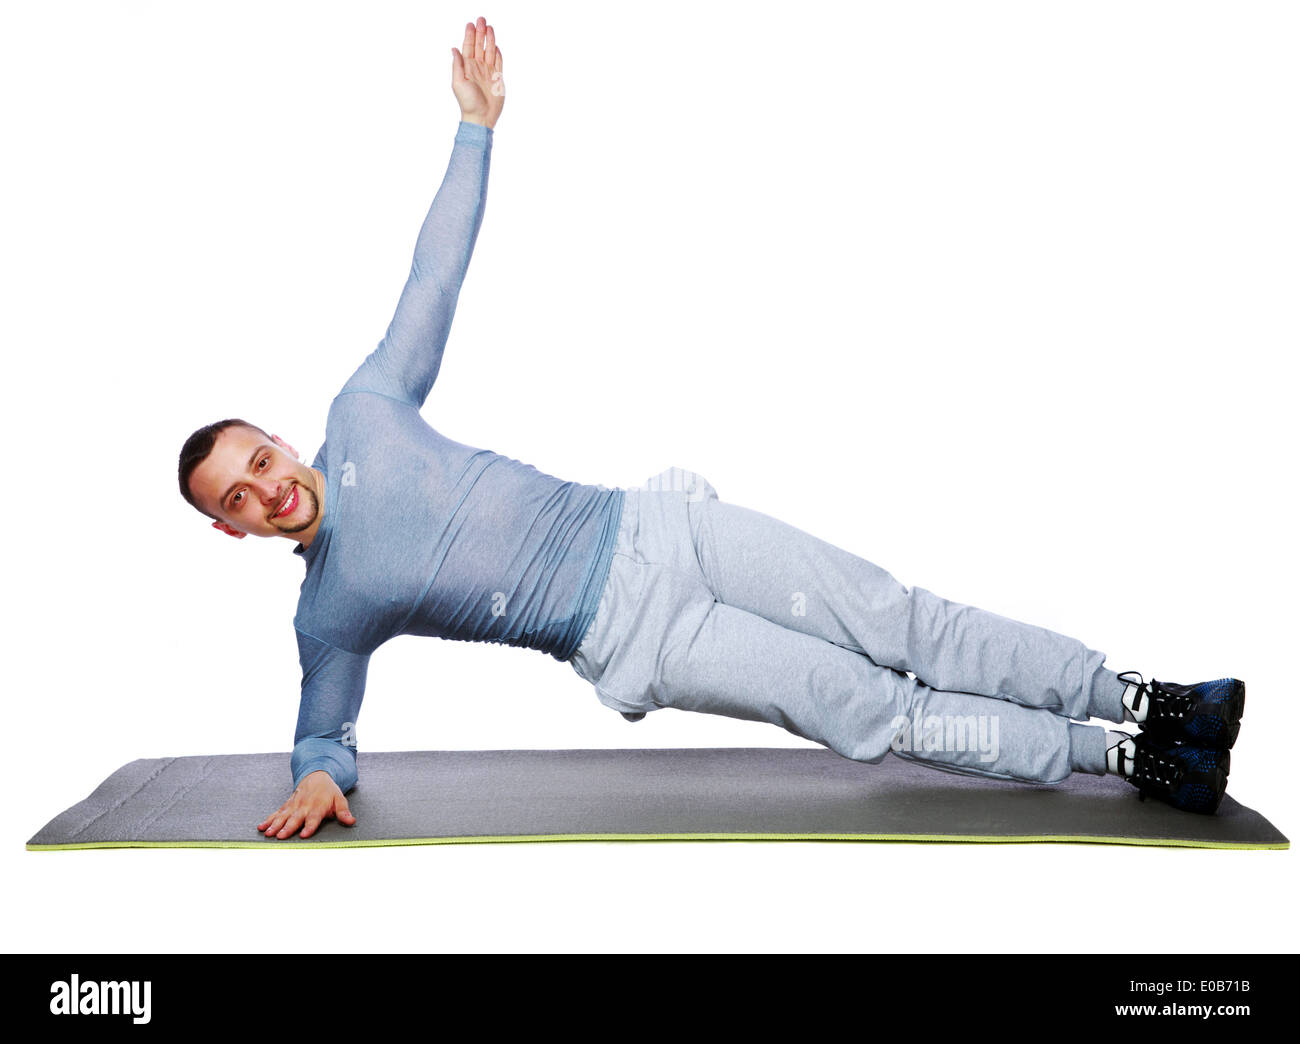 Muskulöse Sportler üben Yoga auf einer Matte auf weißem Hintergrund Stockfoto